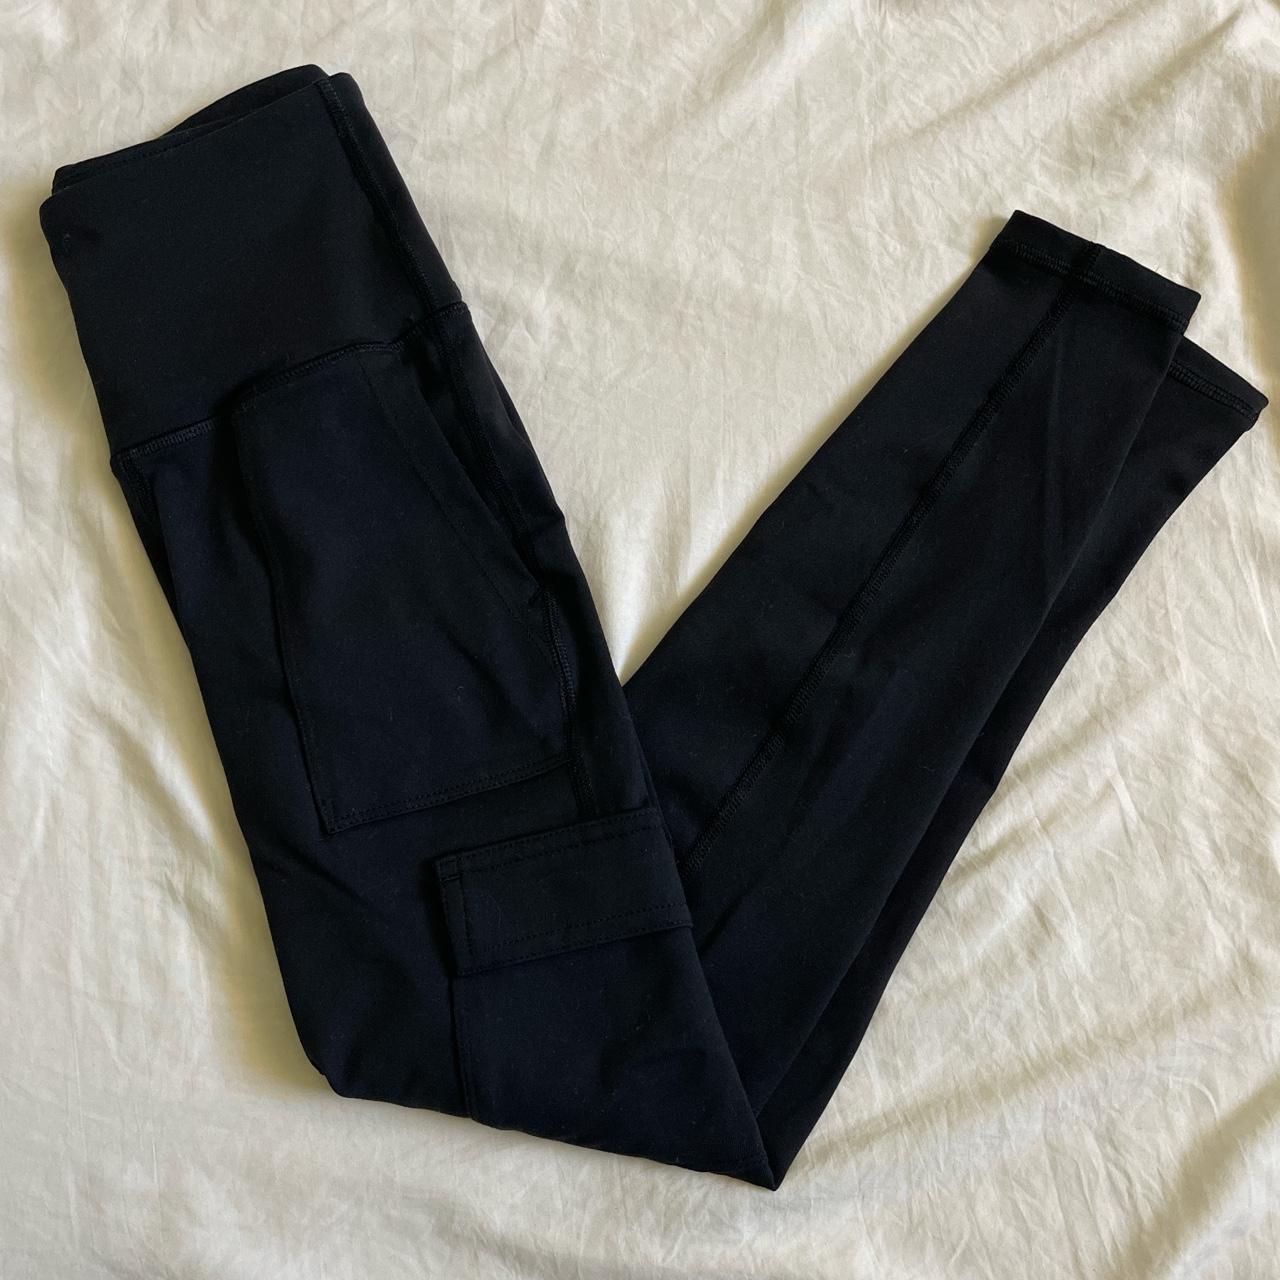 Black leggings. Old navy active compression leggings - Depop